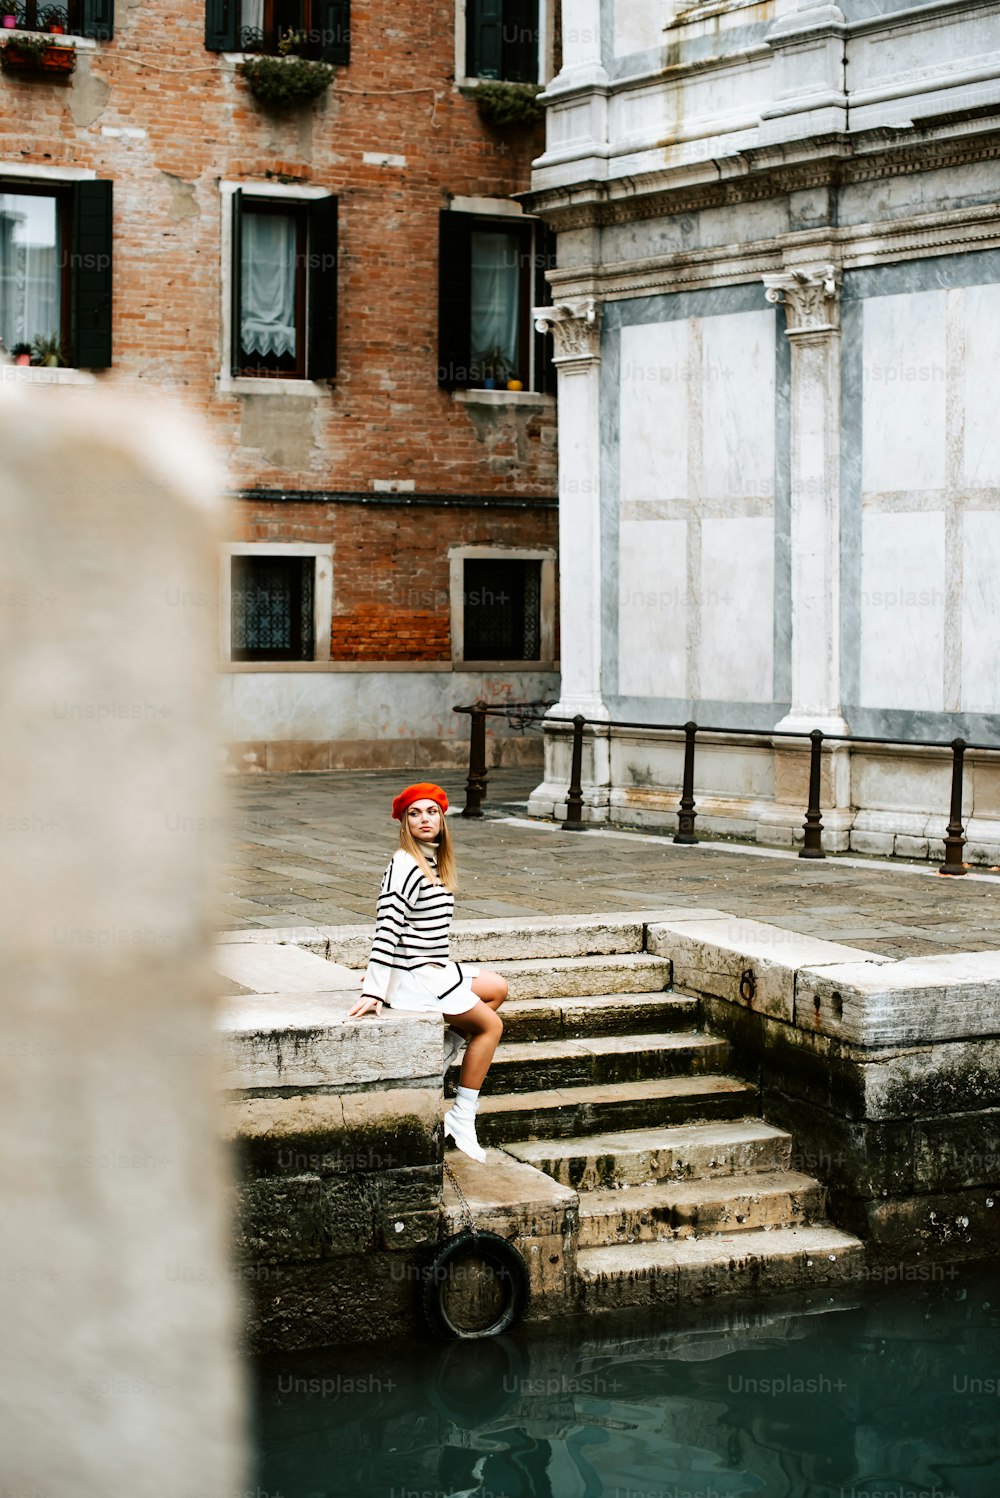 una donna seduta sui gradini accanto a uno specchio d'acqua